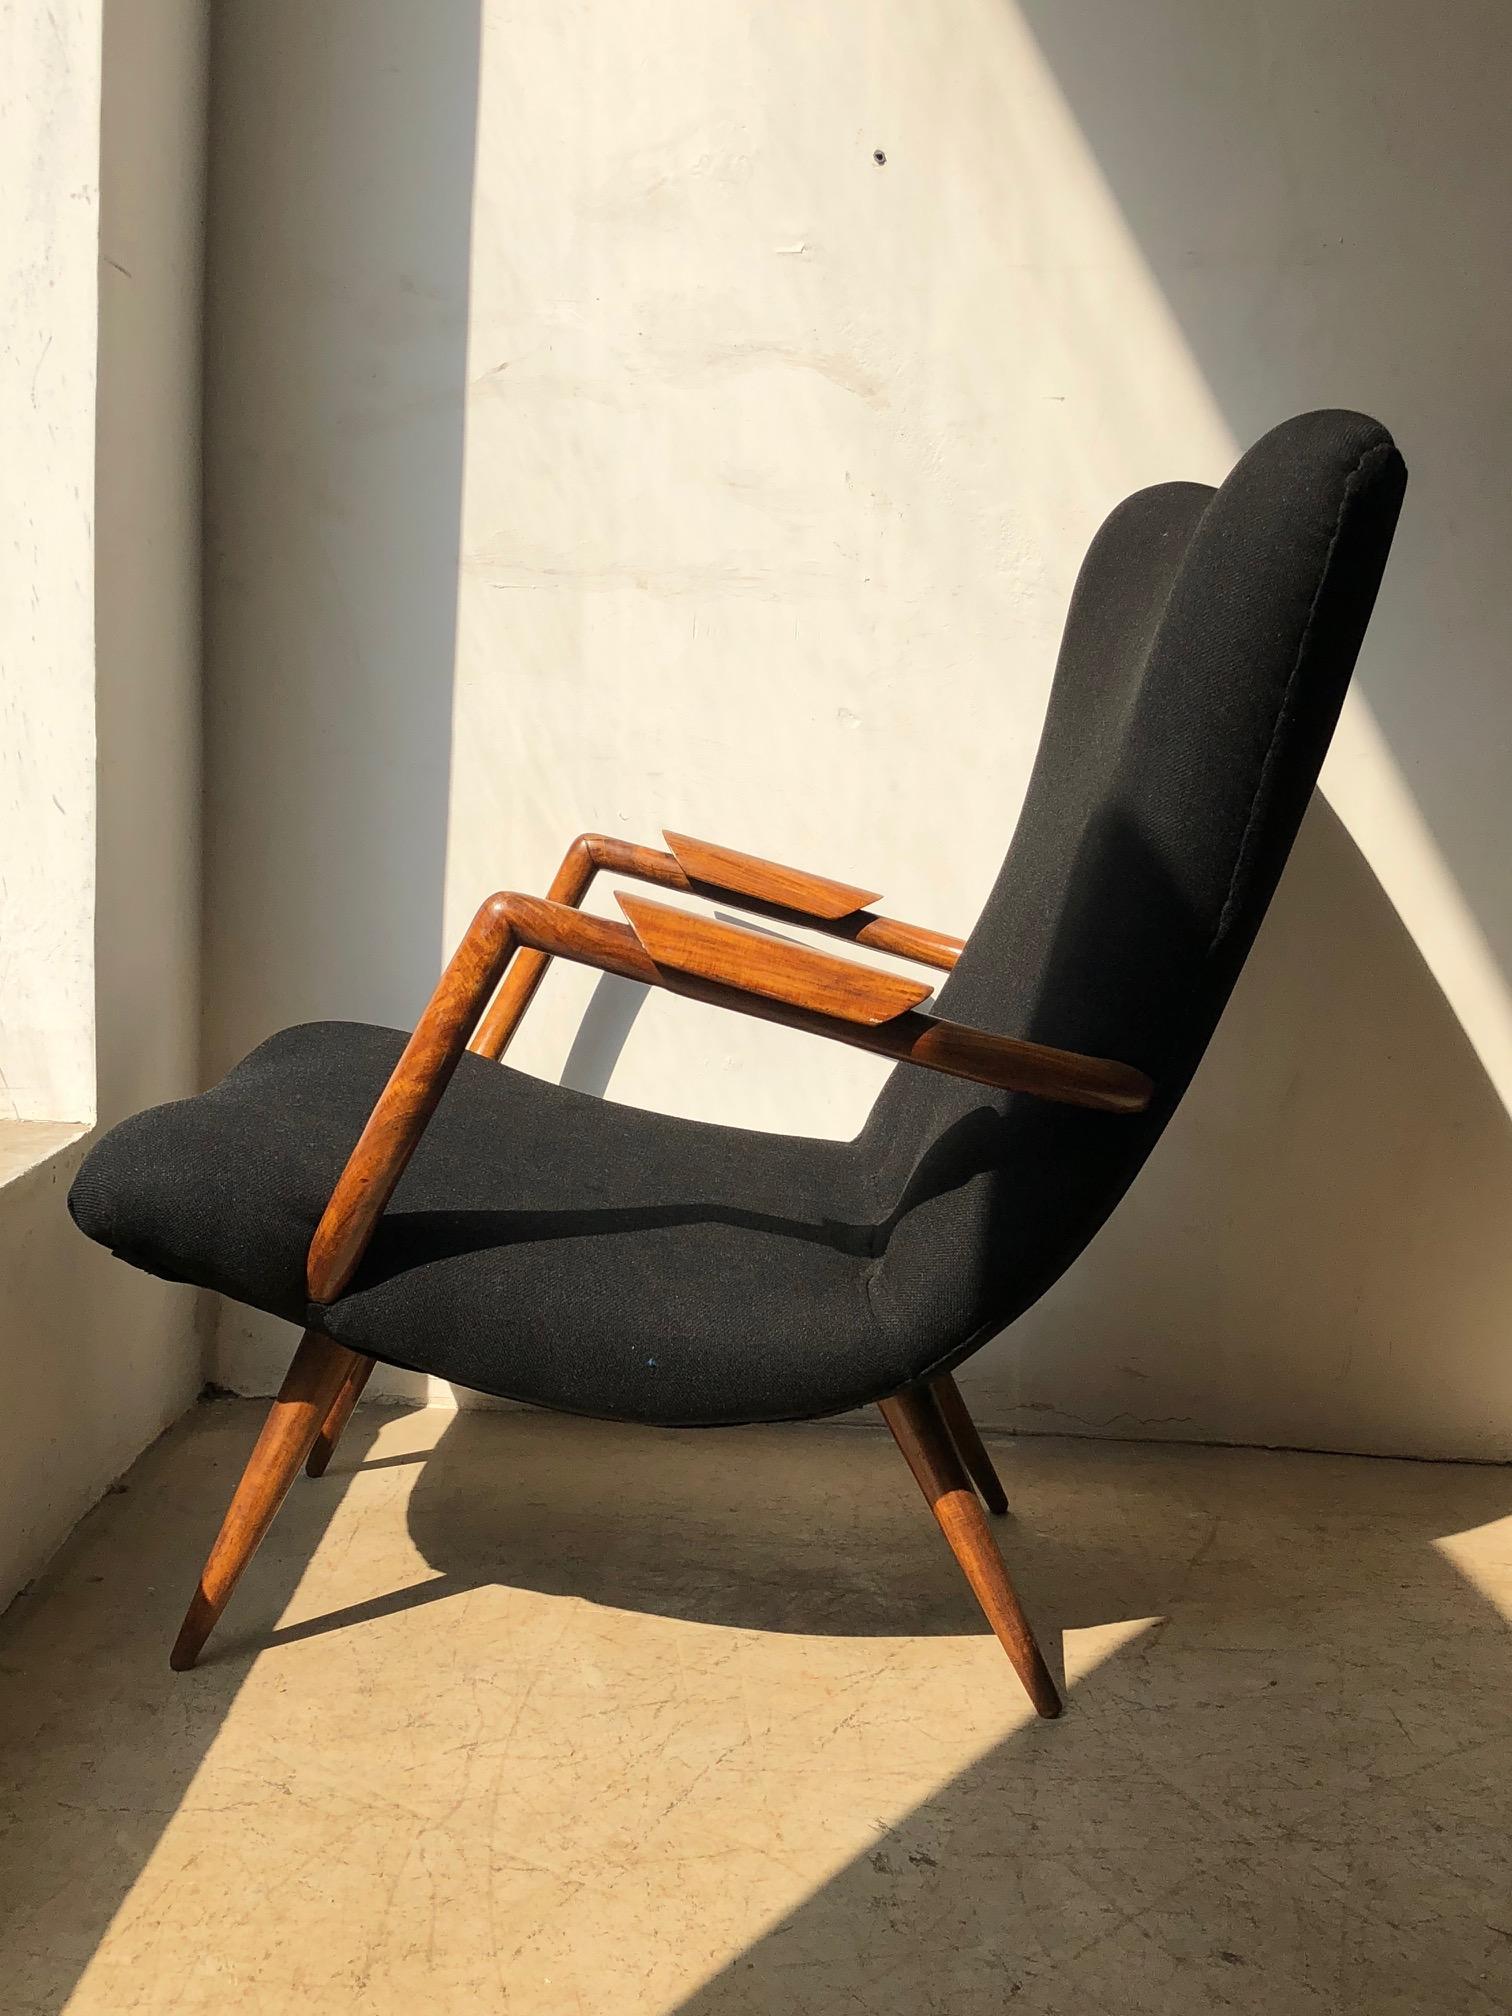 Giuseppe Scapinelli. Dies ist ein wunderschönes Beispiel für einen Scapinelli`s Classic Sessel. Ein wichtiges brasilianisches modernes Design-Möbelstück aus massivem Caviuna-Holz mit schwarzem Polsterbezug.